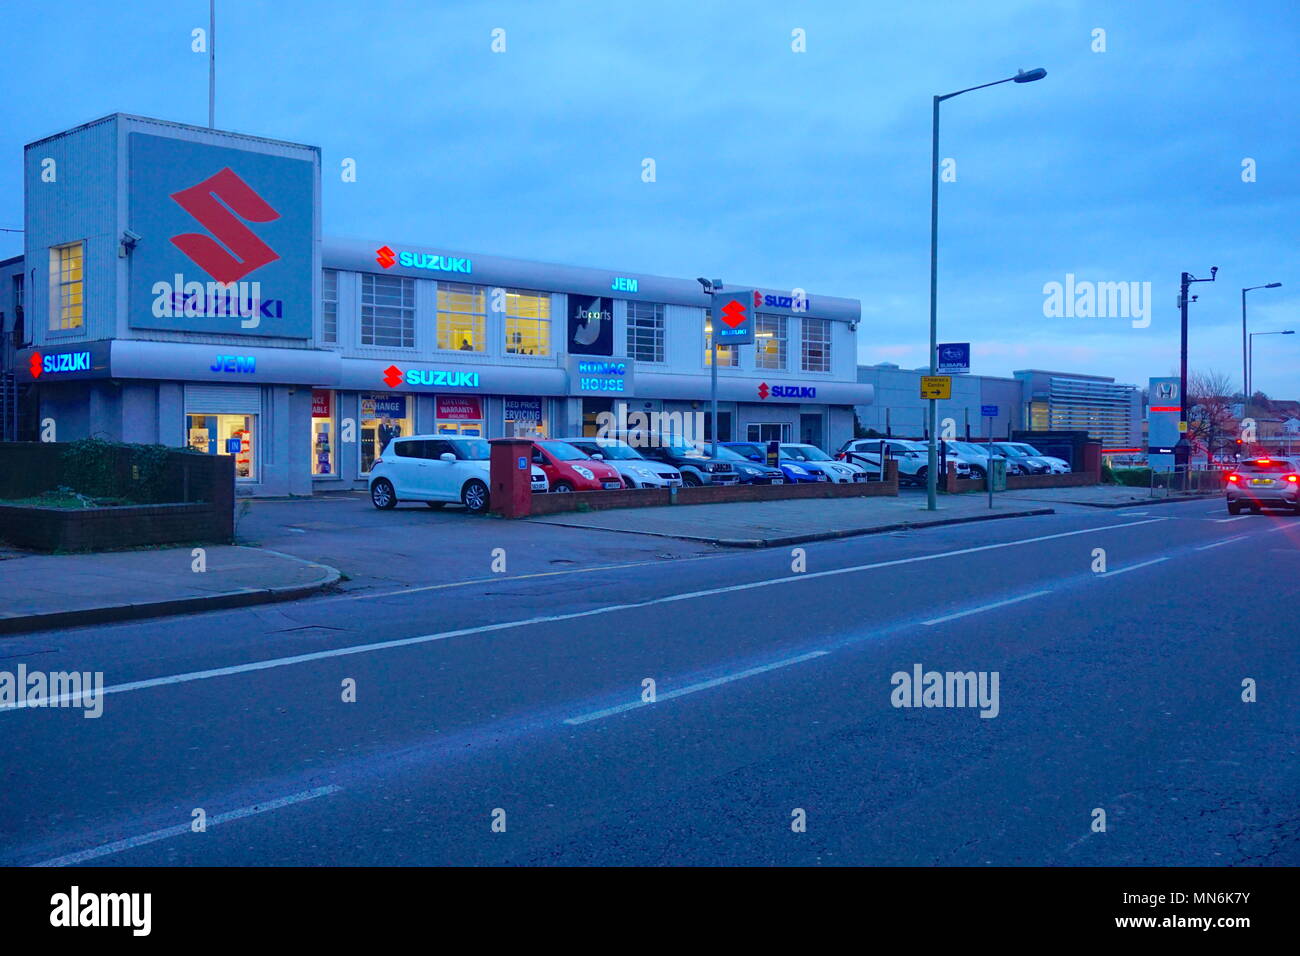 Suzuki Dealership, Colindale, London, UK, England Stock Photo